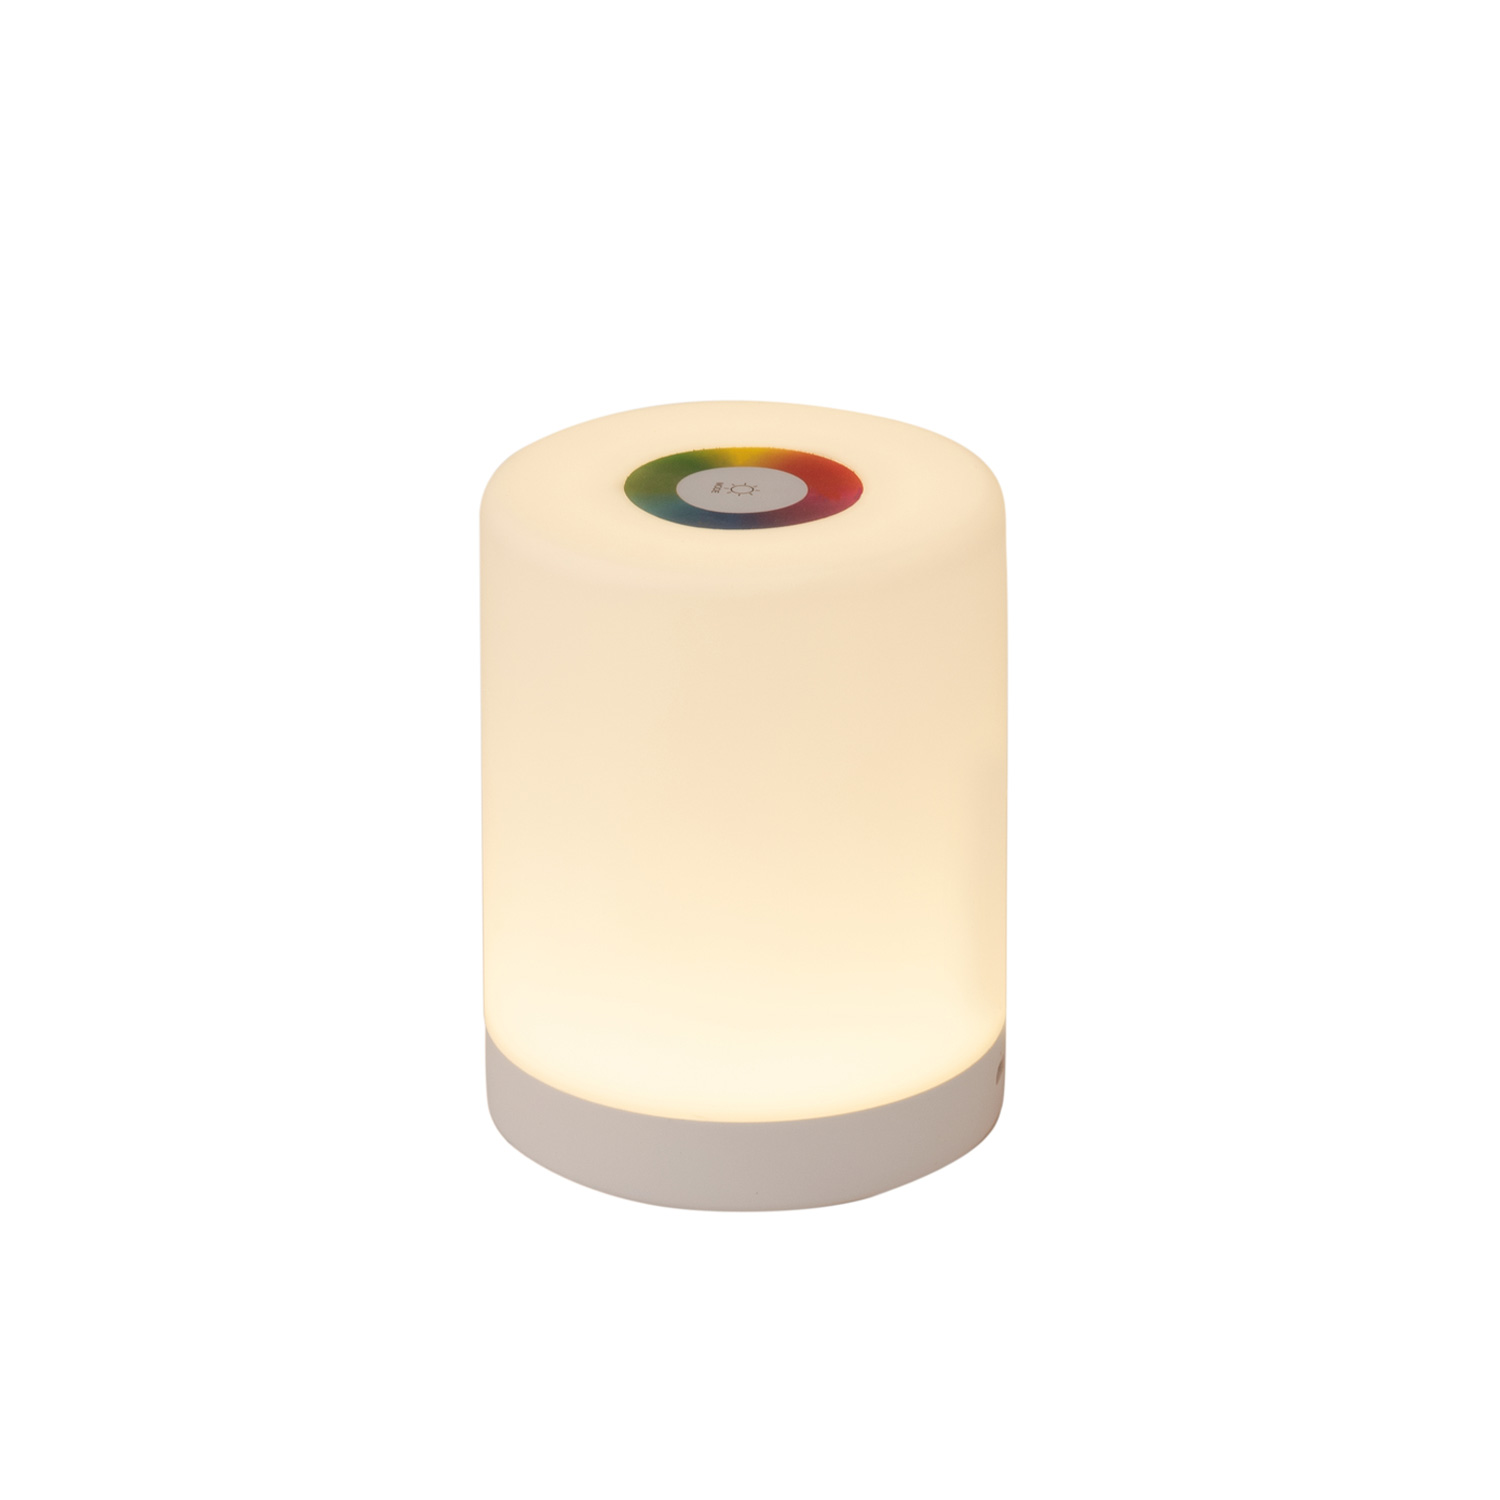 Tischleuchte RGB Farbwähler und warmweiß - Touch Funktion - USB Ladefunktion